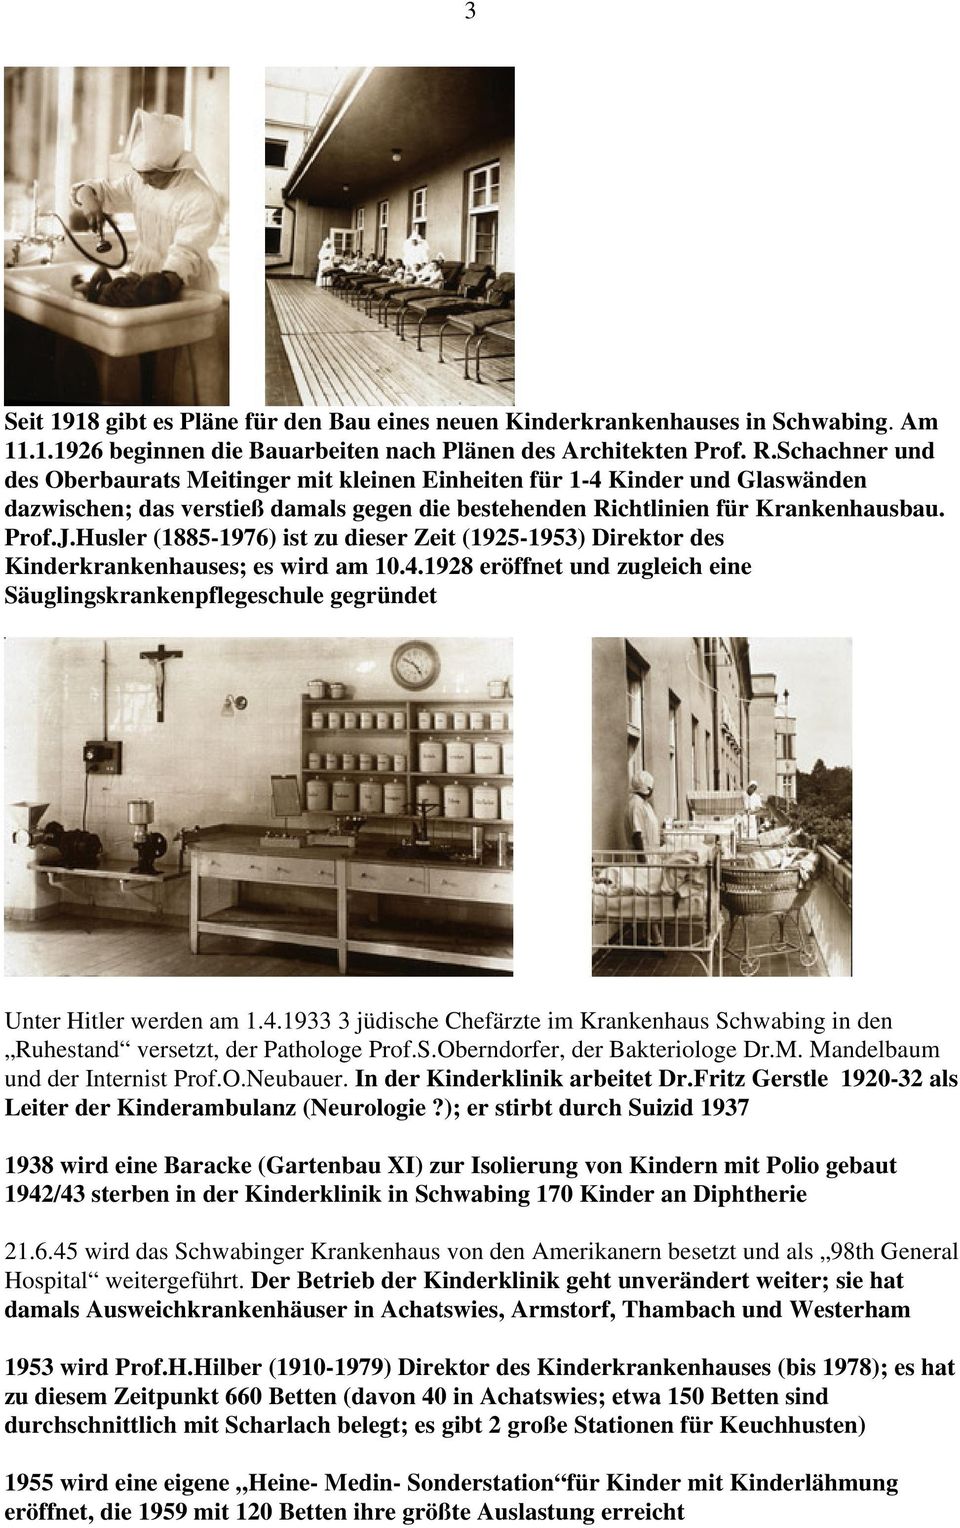 Husler (1885-1976) ist zu dieser Zeit (1925-1953) Direktor des Kinderkrankenhauses; es wird am 10.4.1928 eröffnet und zugleich eine Säuglingskrankenpflegeschule gegründet Unter Hitler werden am 1.4.1933 3 jüdische Chefärzte im Krankenhaus Schwabing in den Ruhestand versetzt, der Pathologe Prof.